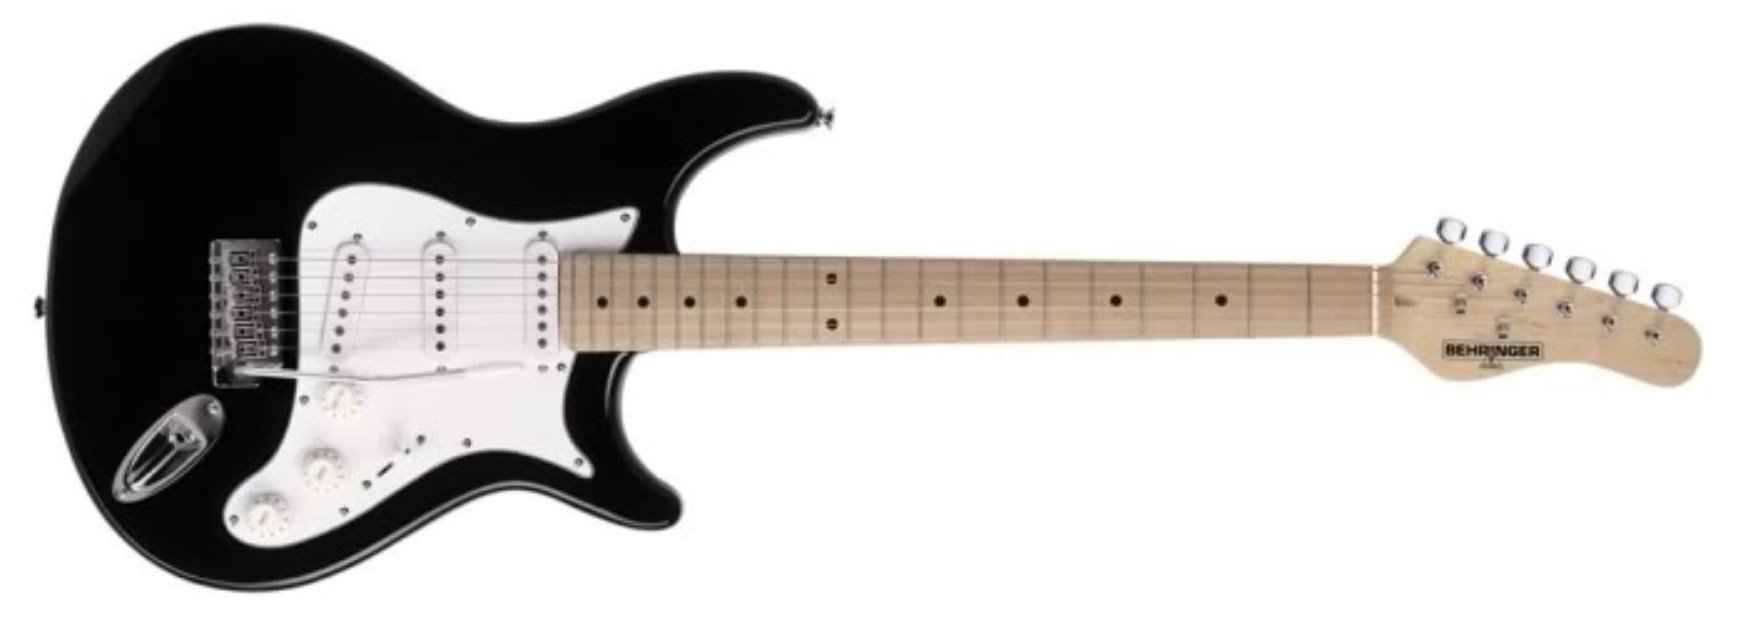 Vendo Guitarra Behringer Stratocaster por 100€.